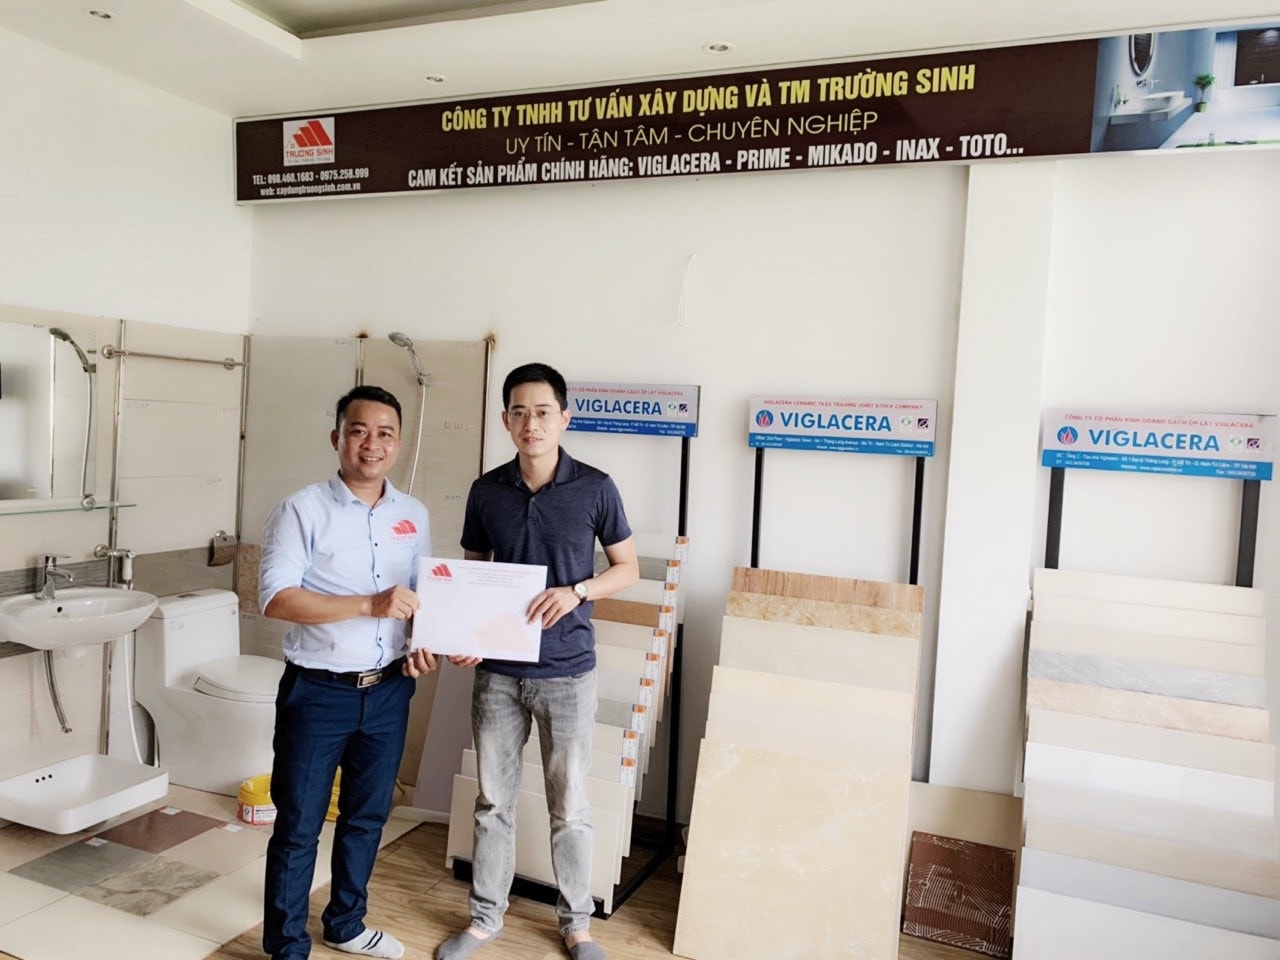 Dự án hoàn thiện biệt thự xây thô [CĐT anh Giáp] tại Hà Đông, Hà Nội.